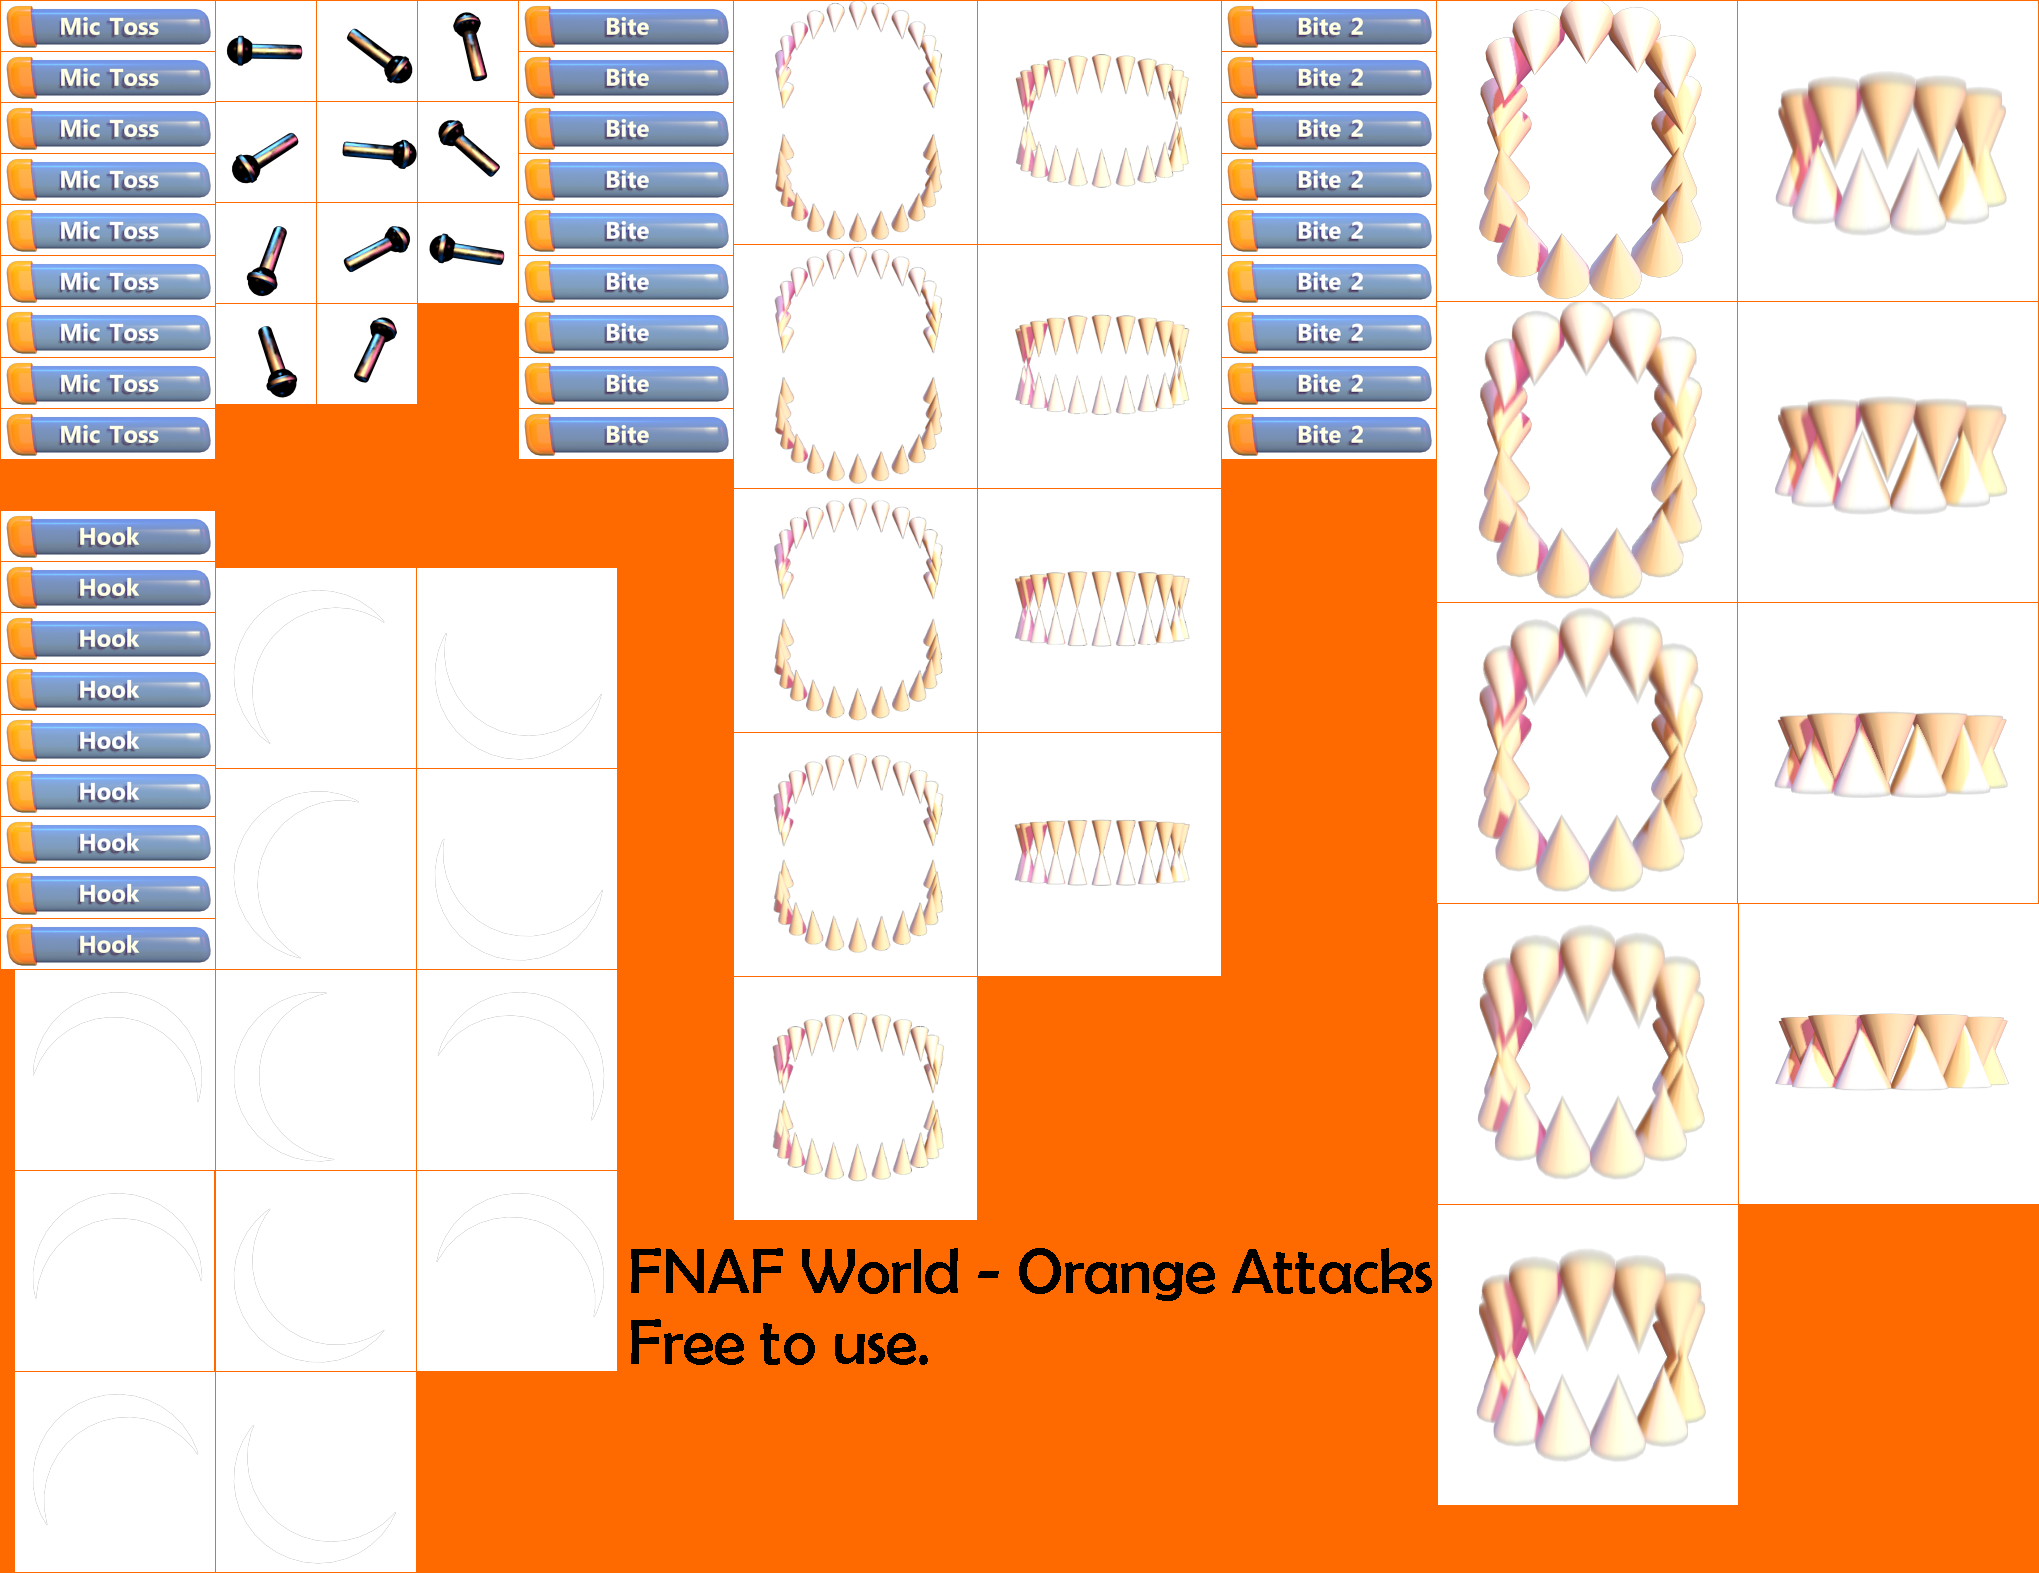 FNaF World - Orange Attacks